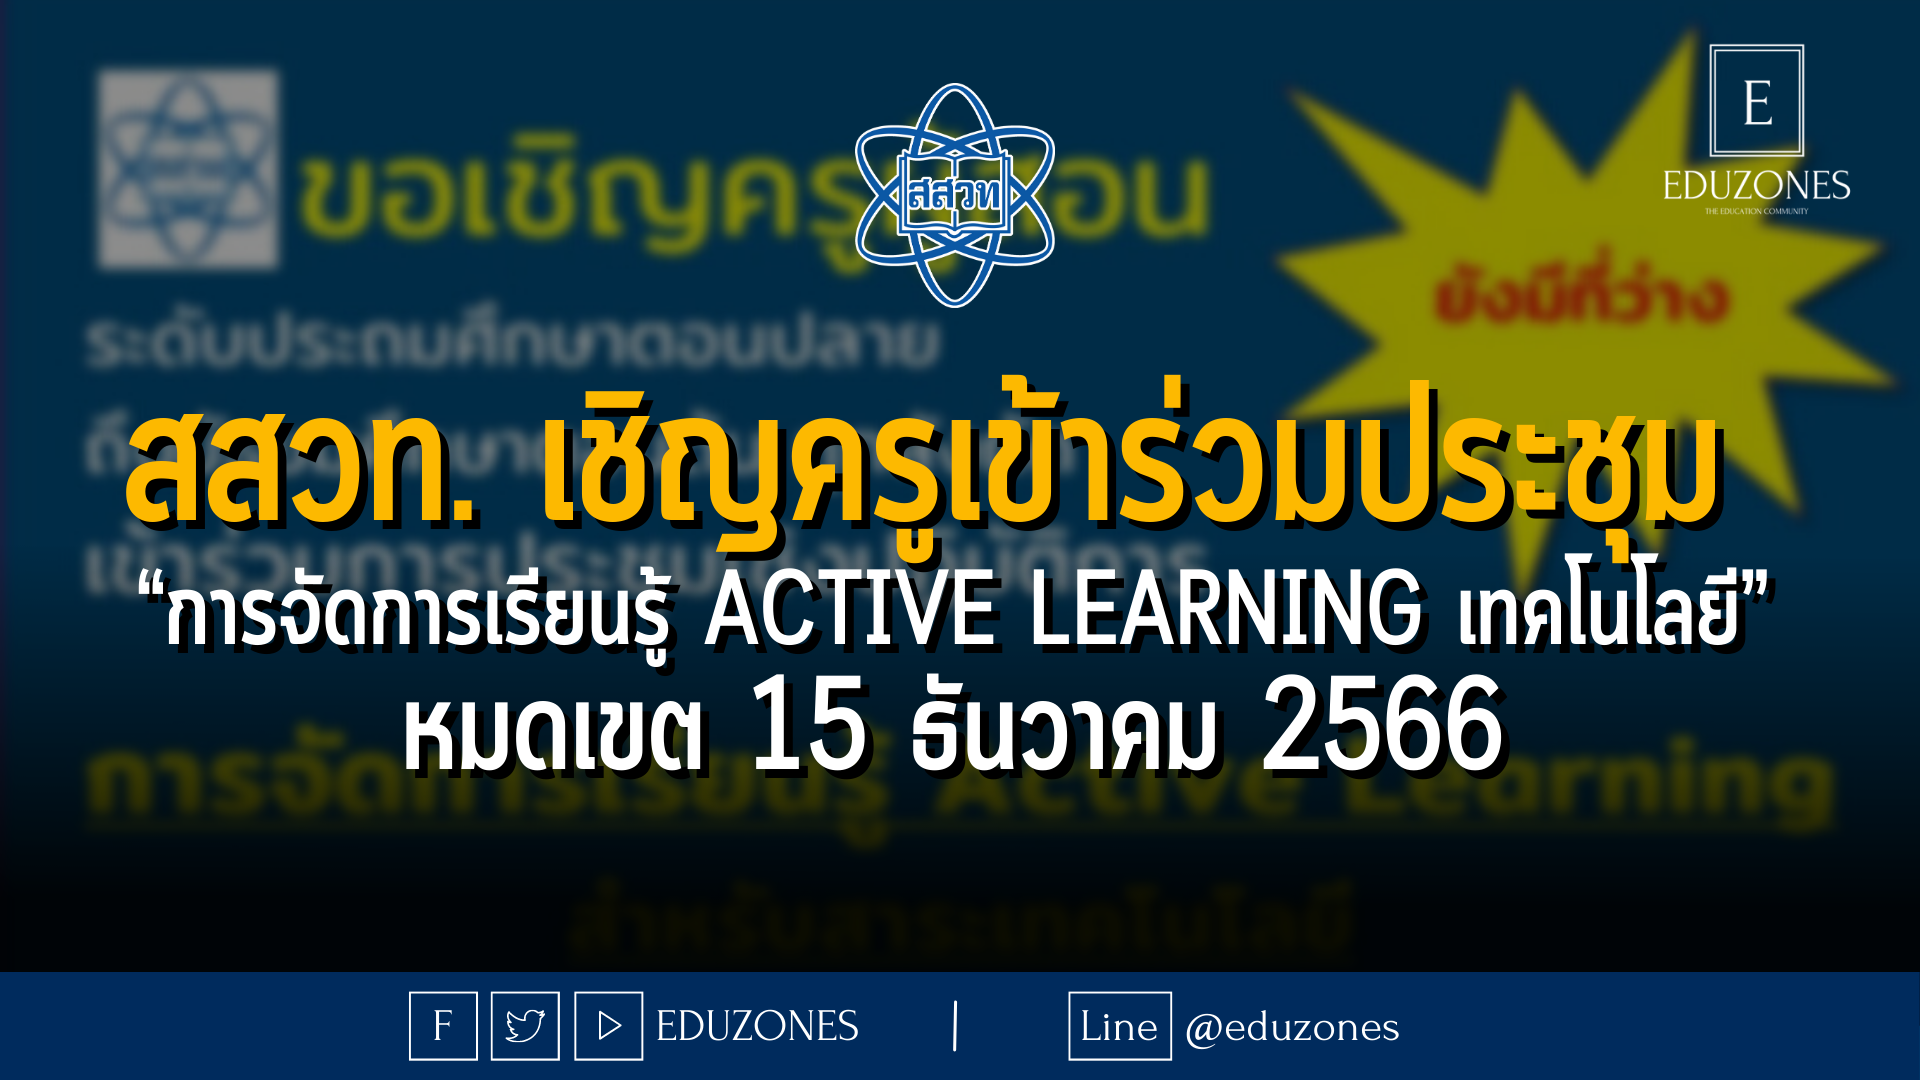 สสวท. เชิญครูเข้าร่วมประชุม  “การจัดการเรียนรู้ Active Learning เทคโนโลยี” - หมดเขต 15 ธันวาคม 2566